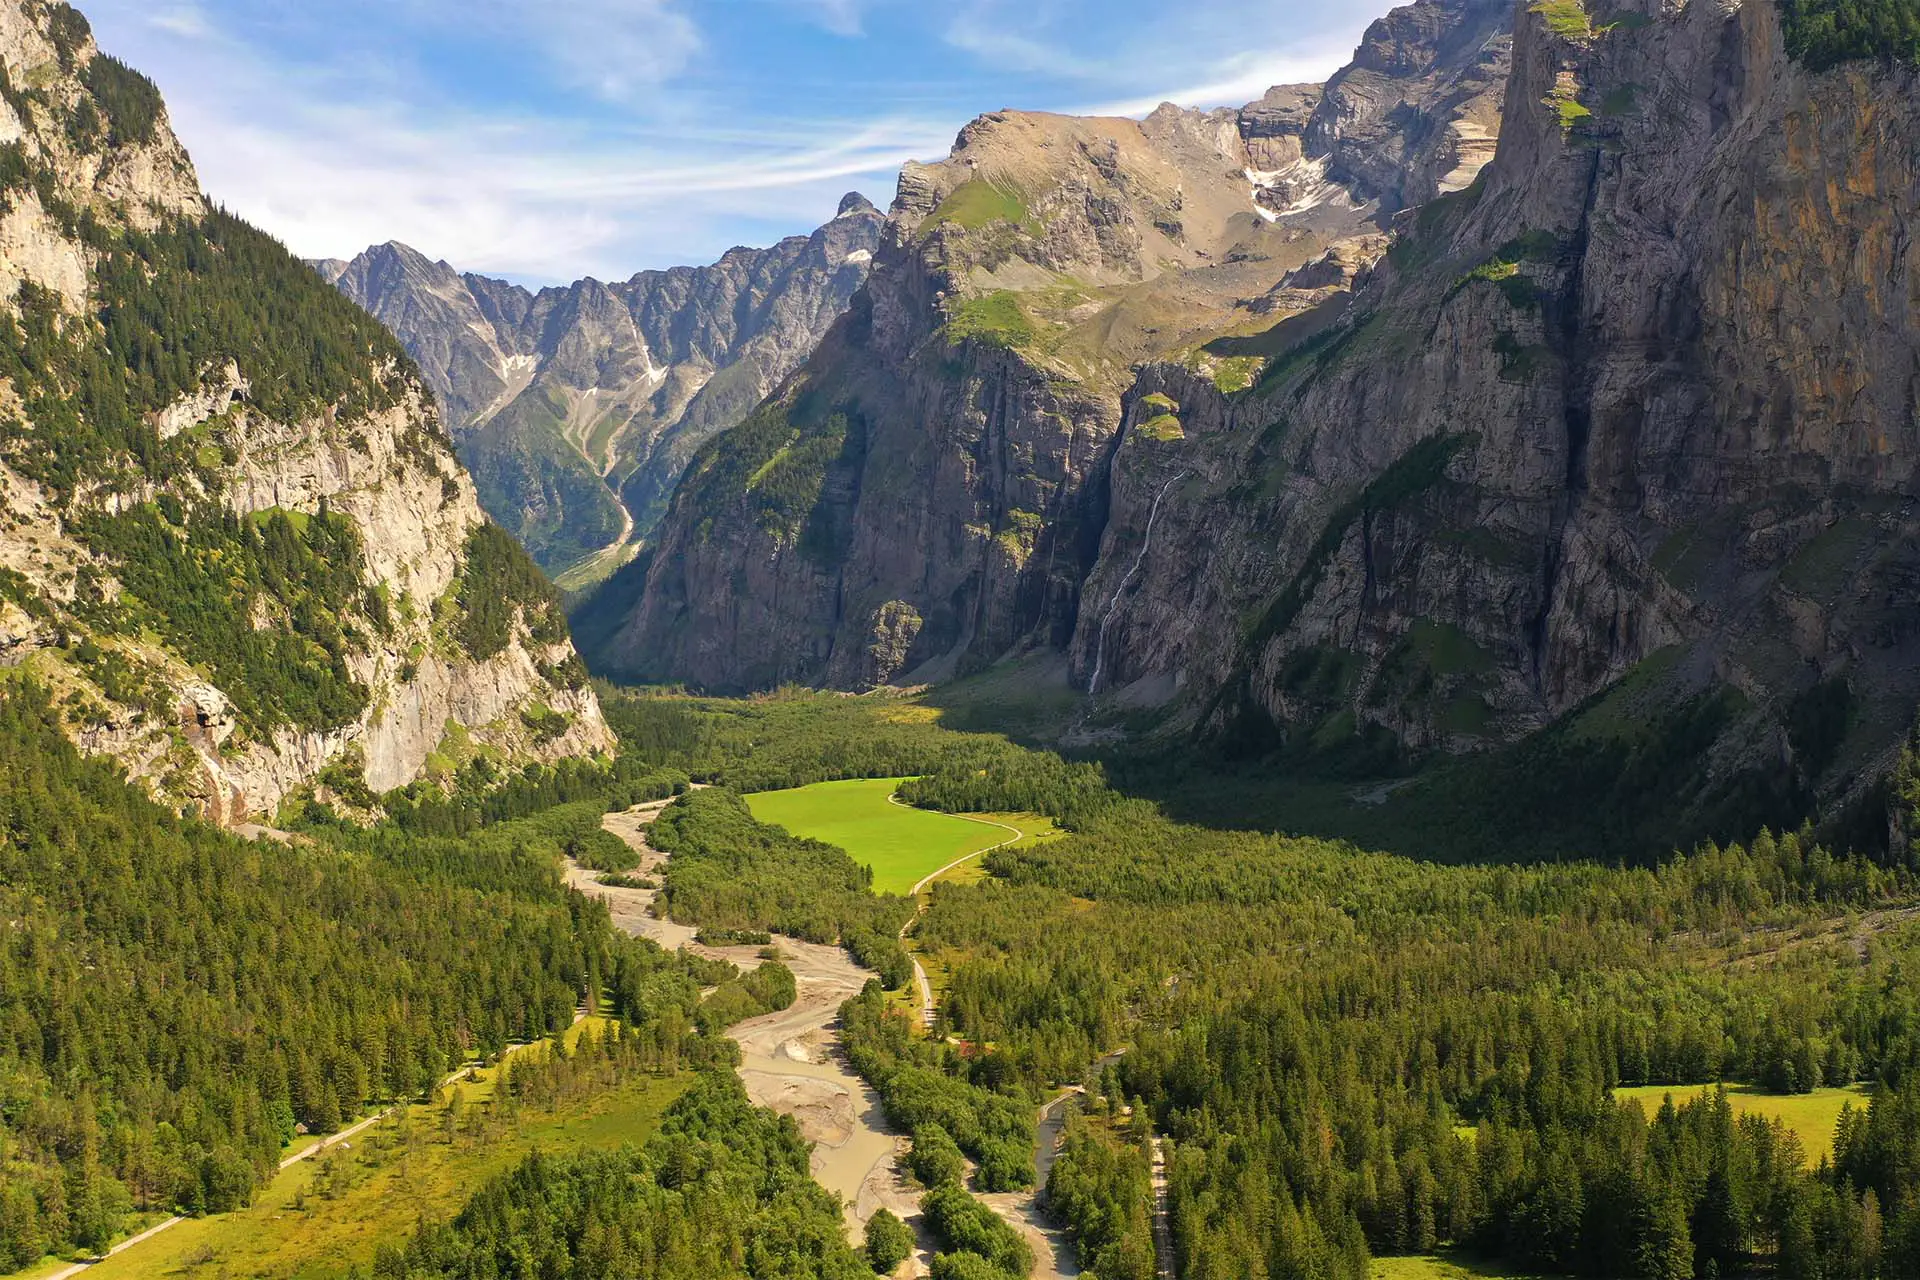 Lerne die 20 Top Ausflugsziele und Sehenswürdigkeiten im Berner Oberland kennen – eine der schönsten Regionen der Schweiz.